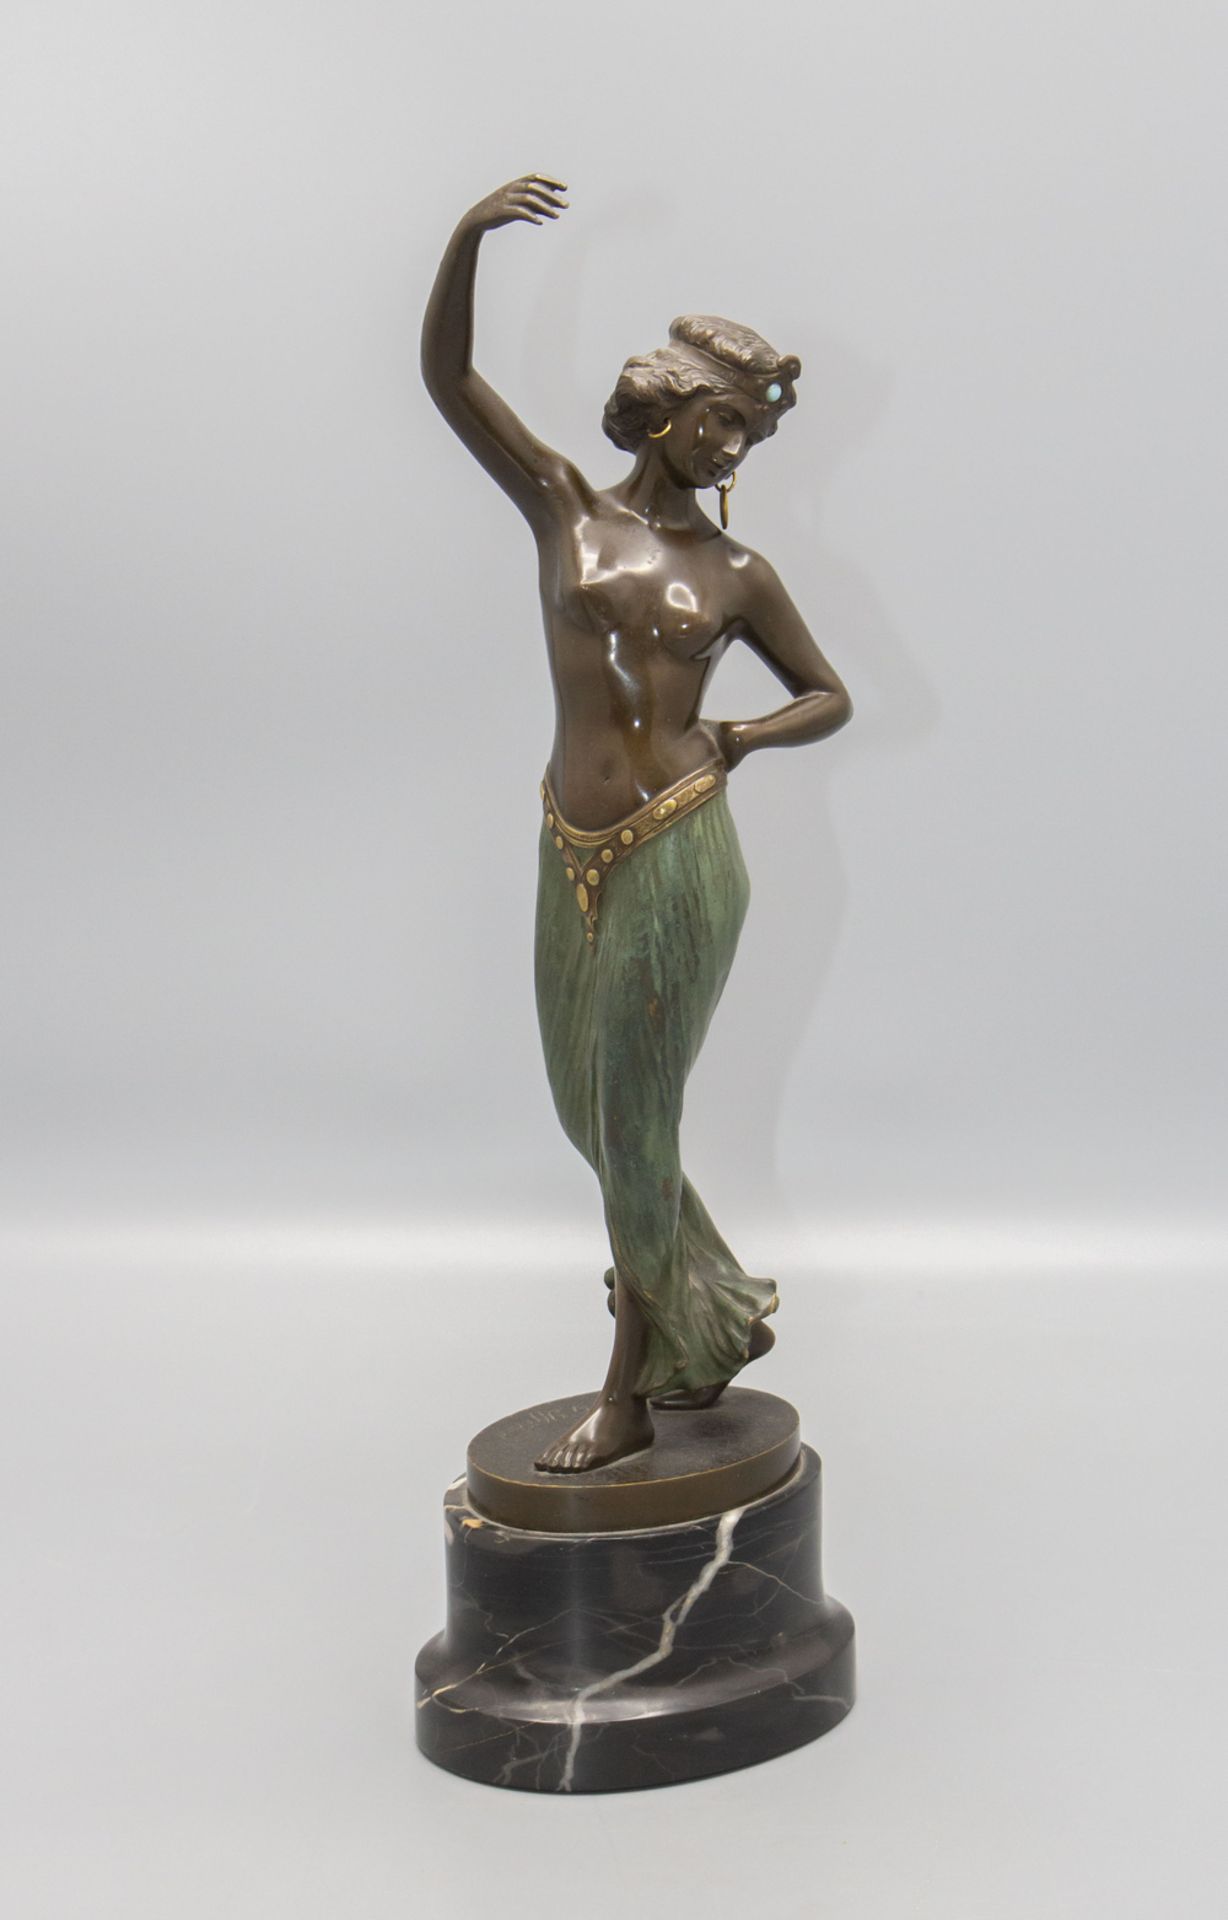 Franz IFFLAND (1862-1935), Bronzeplastik 'Odaliske' / A bronze sculpture 'Odalisque', um 1920